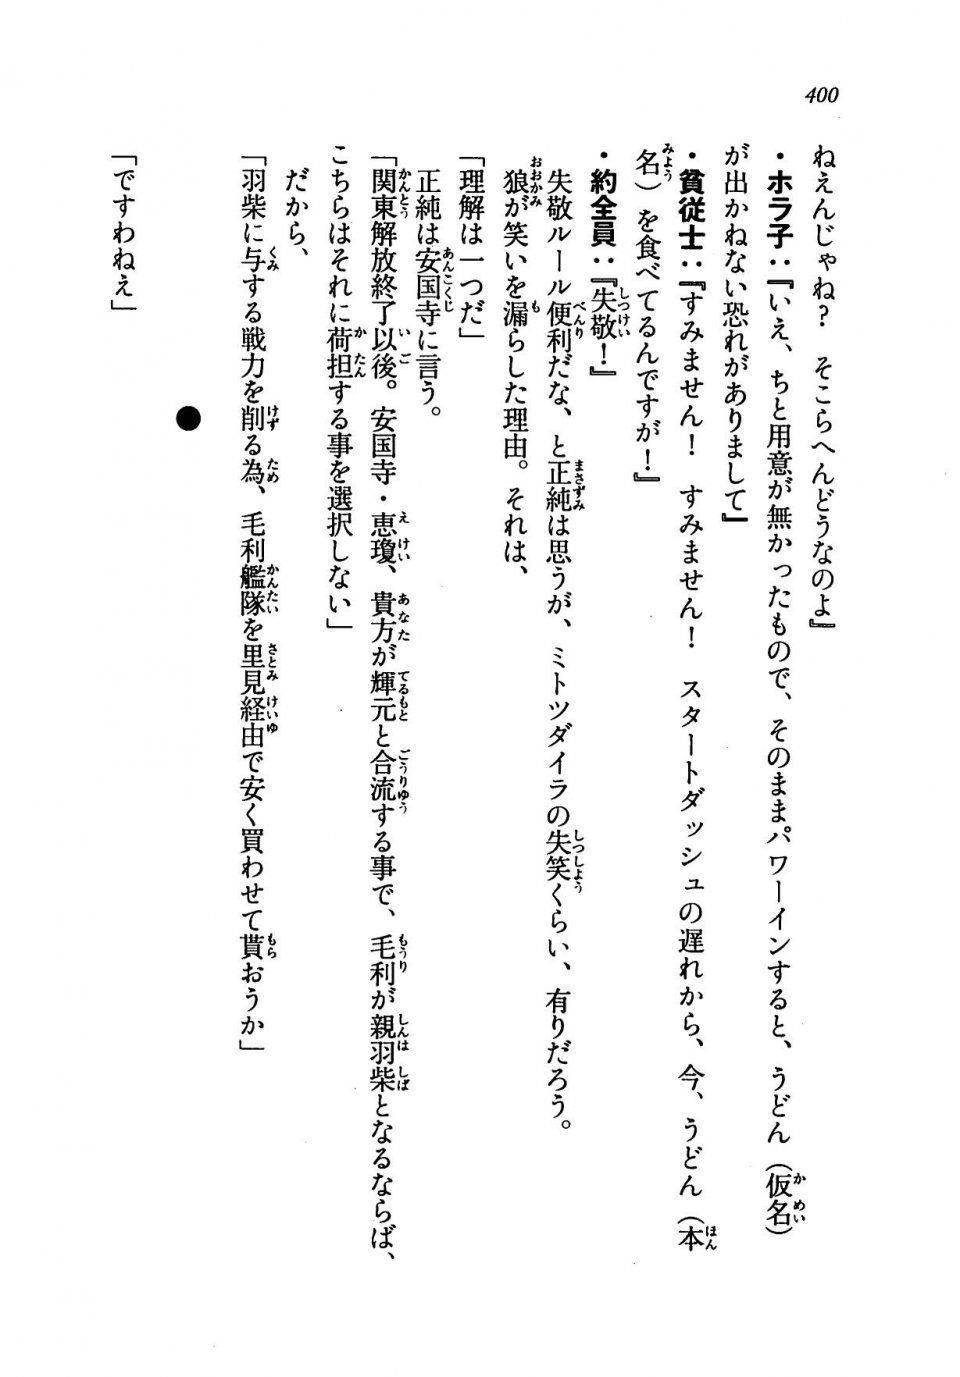 Kyoukai Senjou no Horizon LN Vol 19(8A) - Photo #400